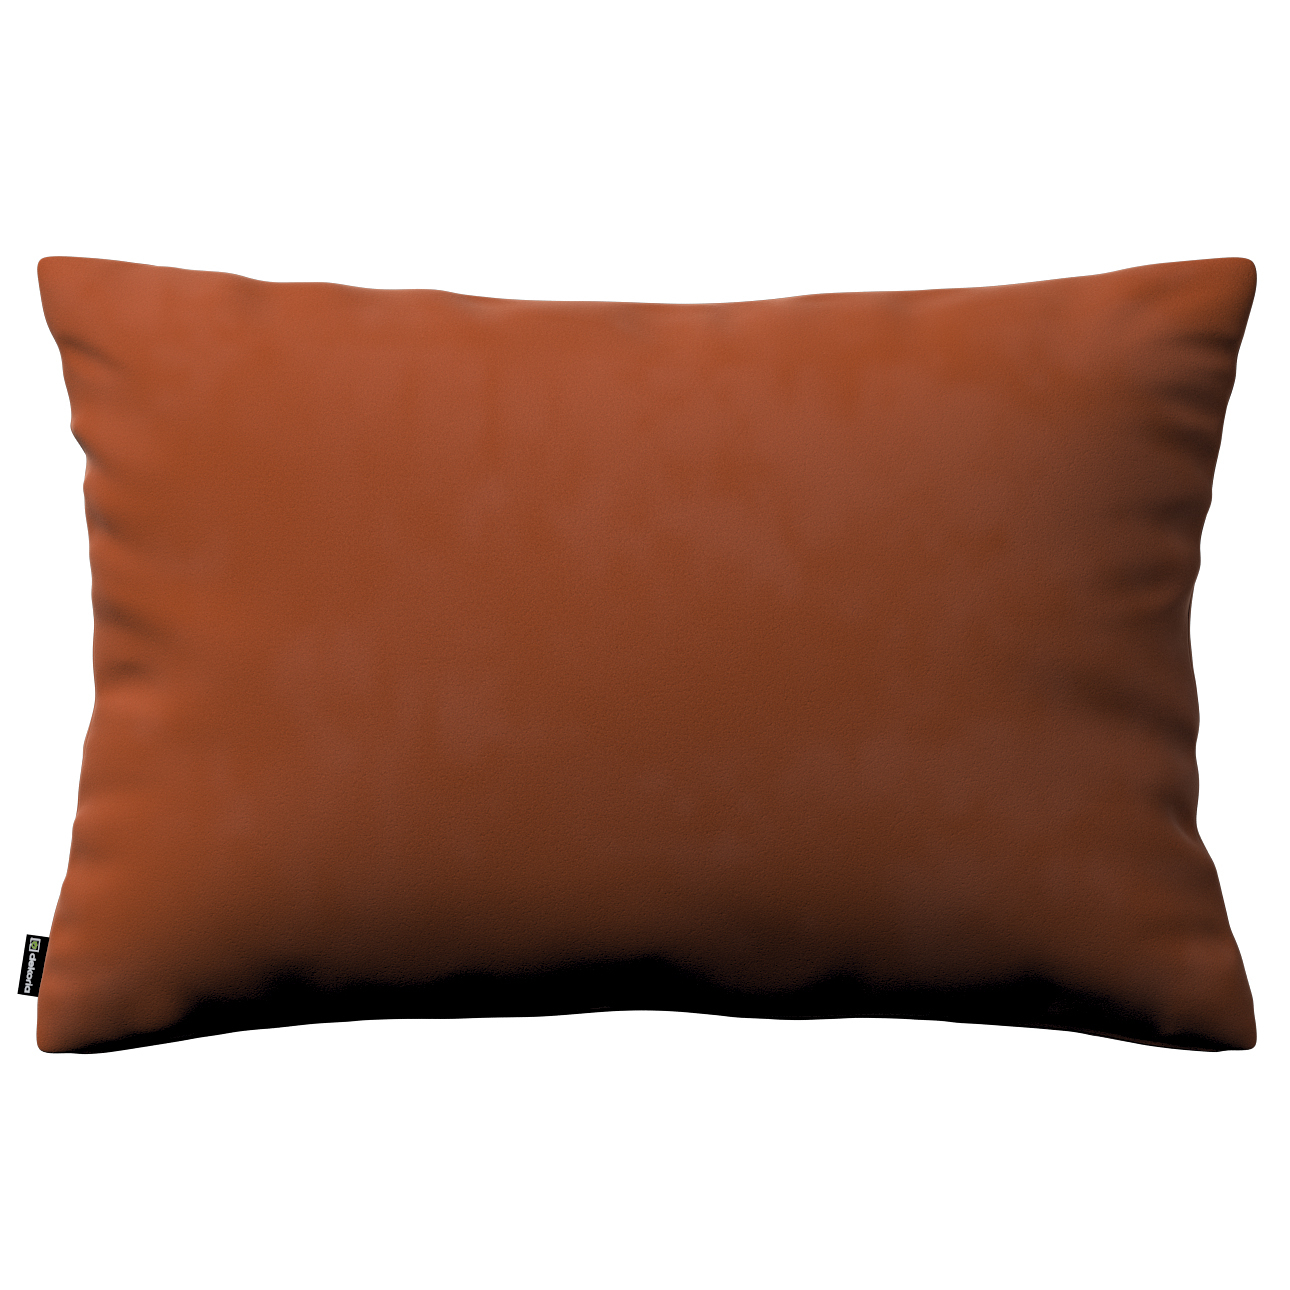 Kissenhülle Kinga rechteckig, braun-karamell, 60 x 40 cm, Velvet (704-33) günstig online kaufen